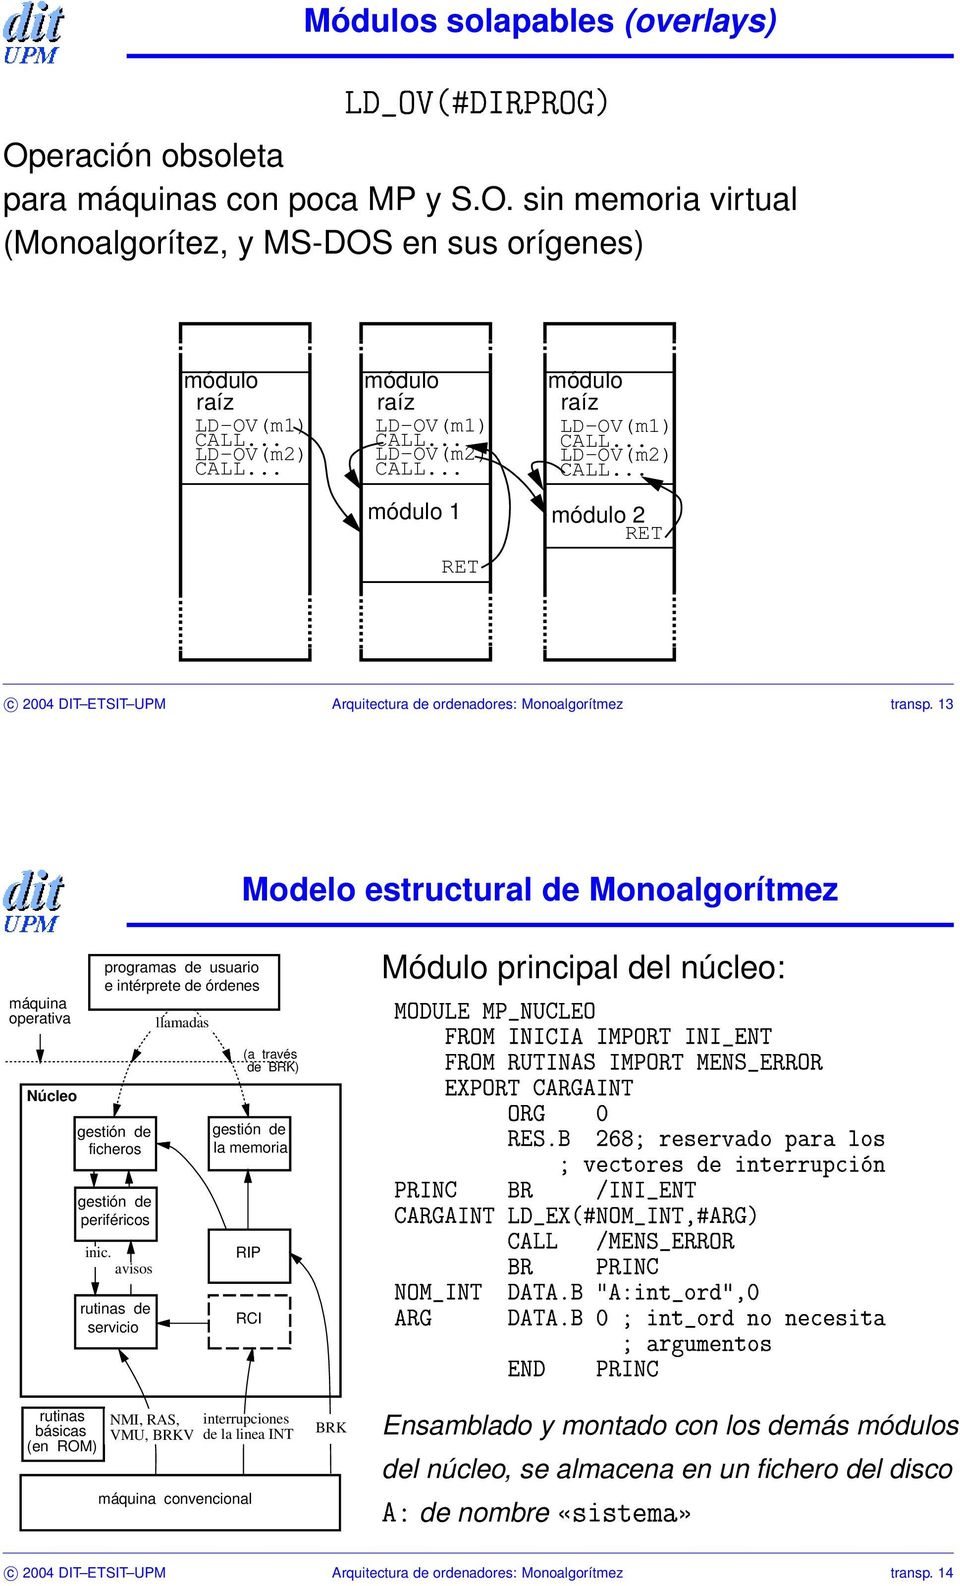 sin memoria virtual (Monoalgorítez, y MS-DOS en sus orígenes) módulo raíz LD OV(m1) LD OV(m2) módulo raíz LD OV(m1) LD OV(m2) módulo 1 RET módulo raíz LD OV(m1) LD OV(m2) módulo 2 RET c 2004 DIT